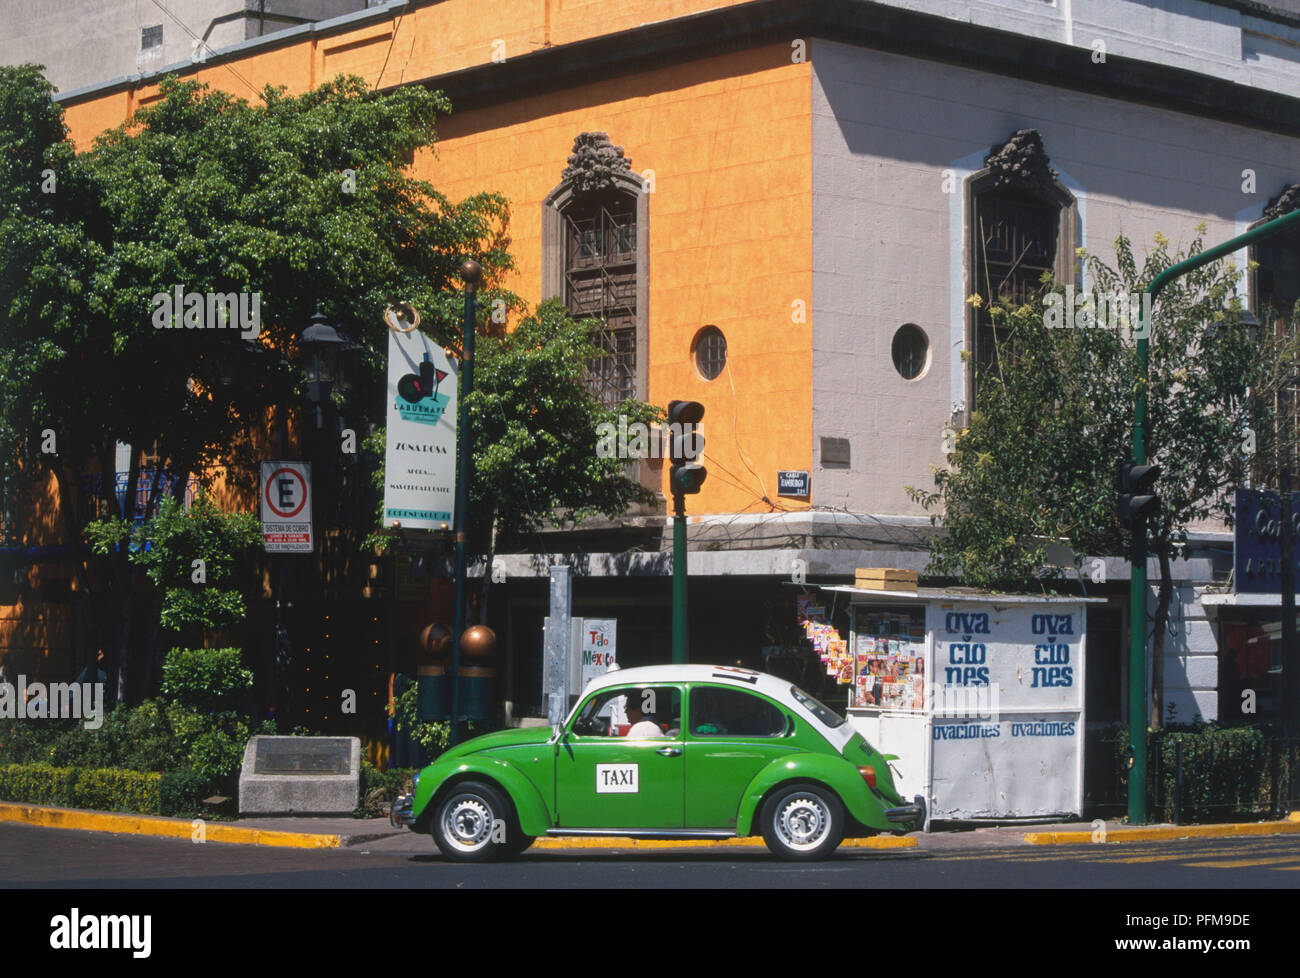 Ciudad de México, verde y blanco VW taxi de la calle en la esquina de una calle, vista lateral. Foto de stock